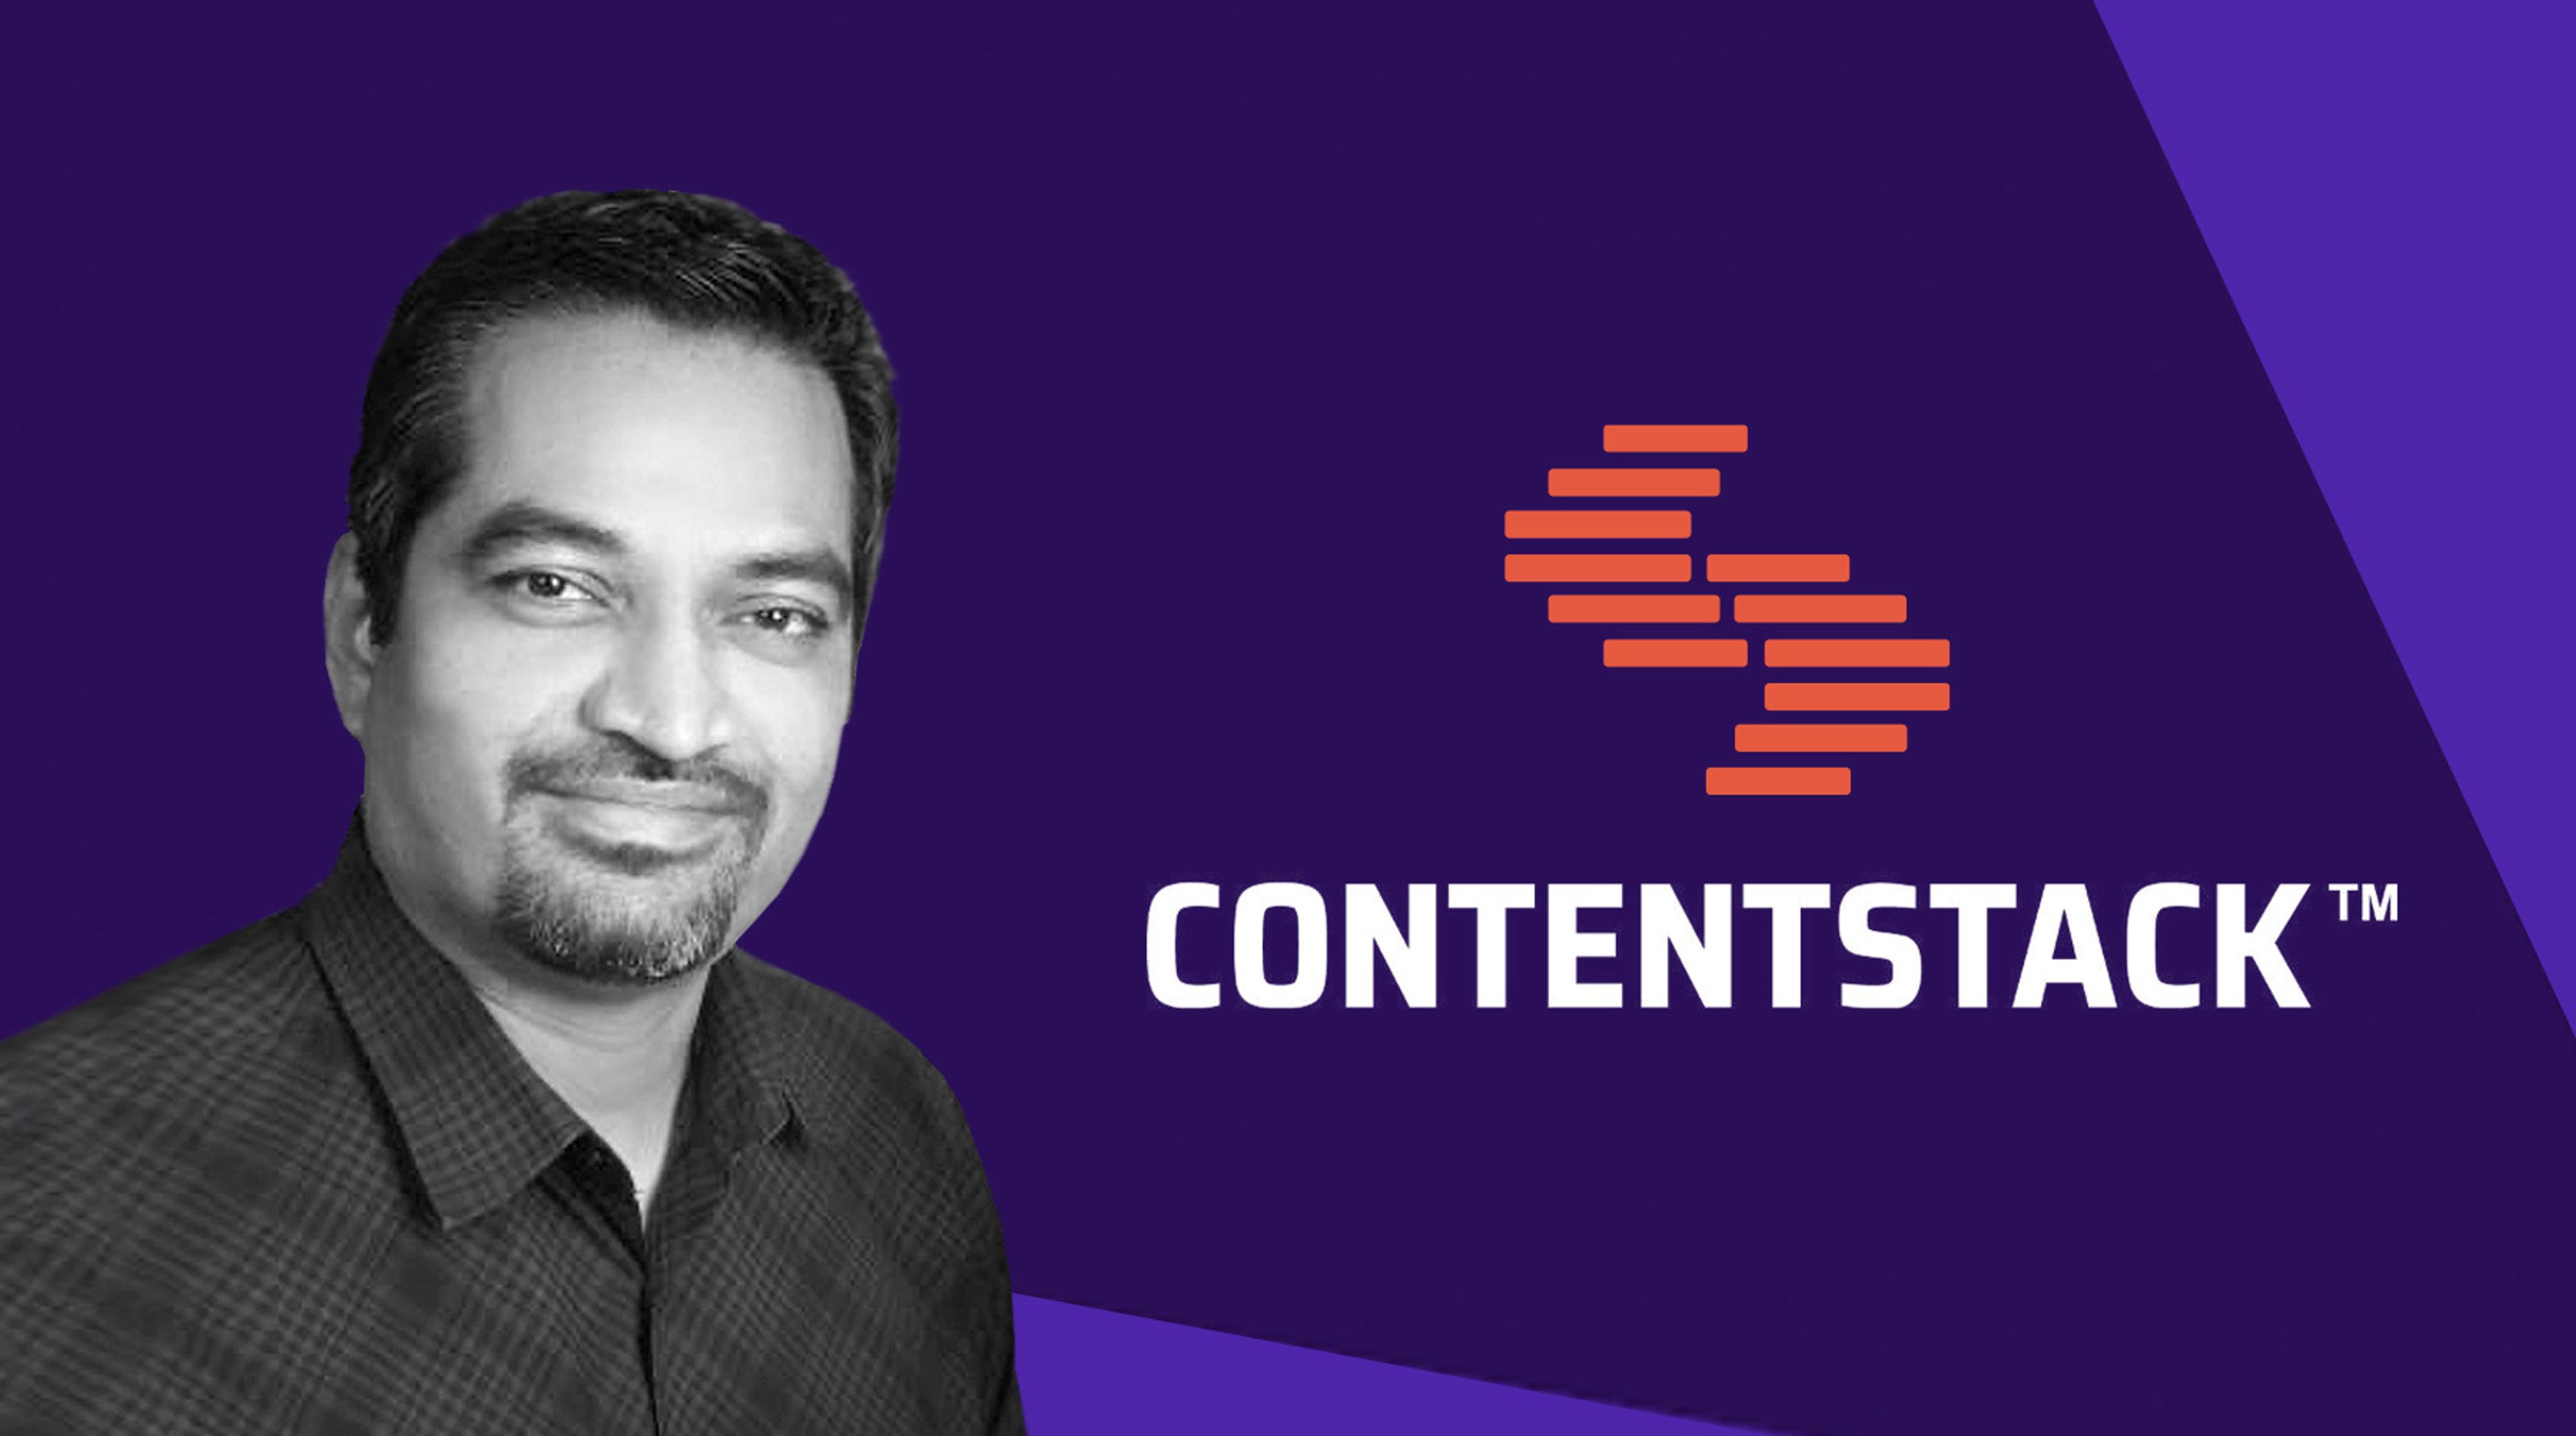 Image of Contentstack logo with headshot of Nishant Patel, CTO